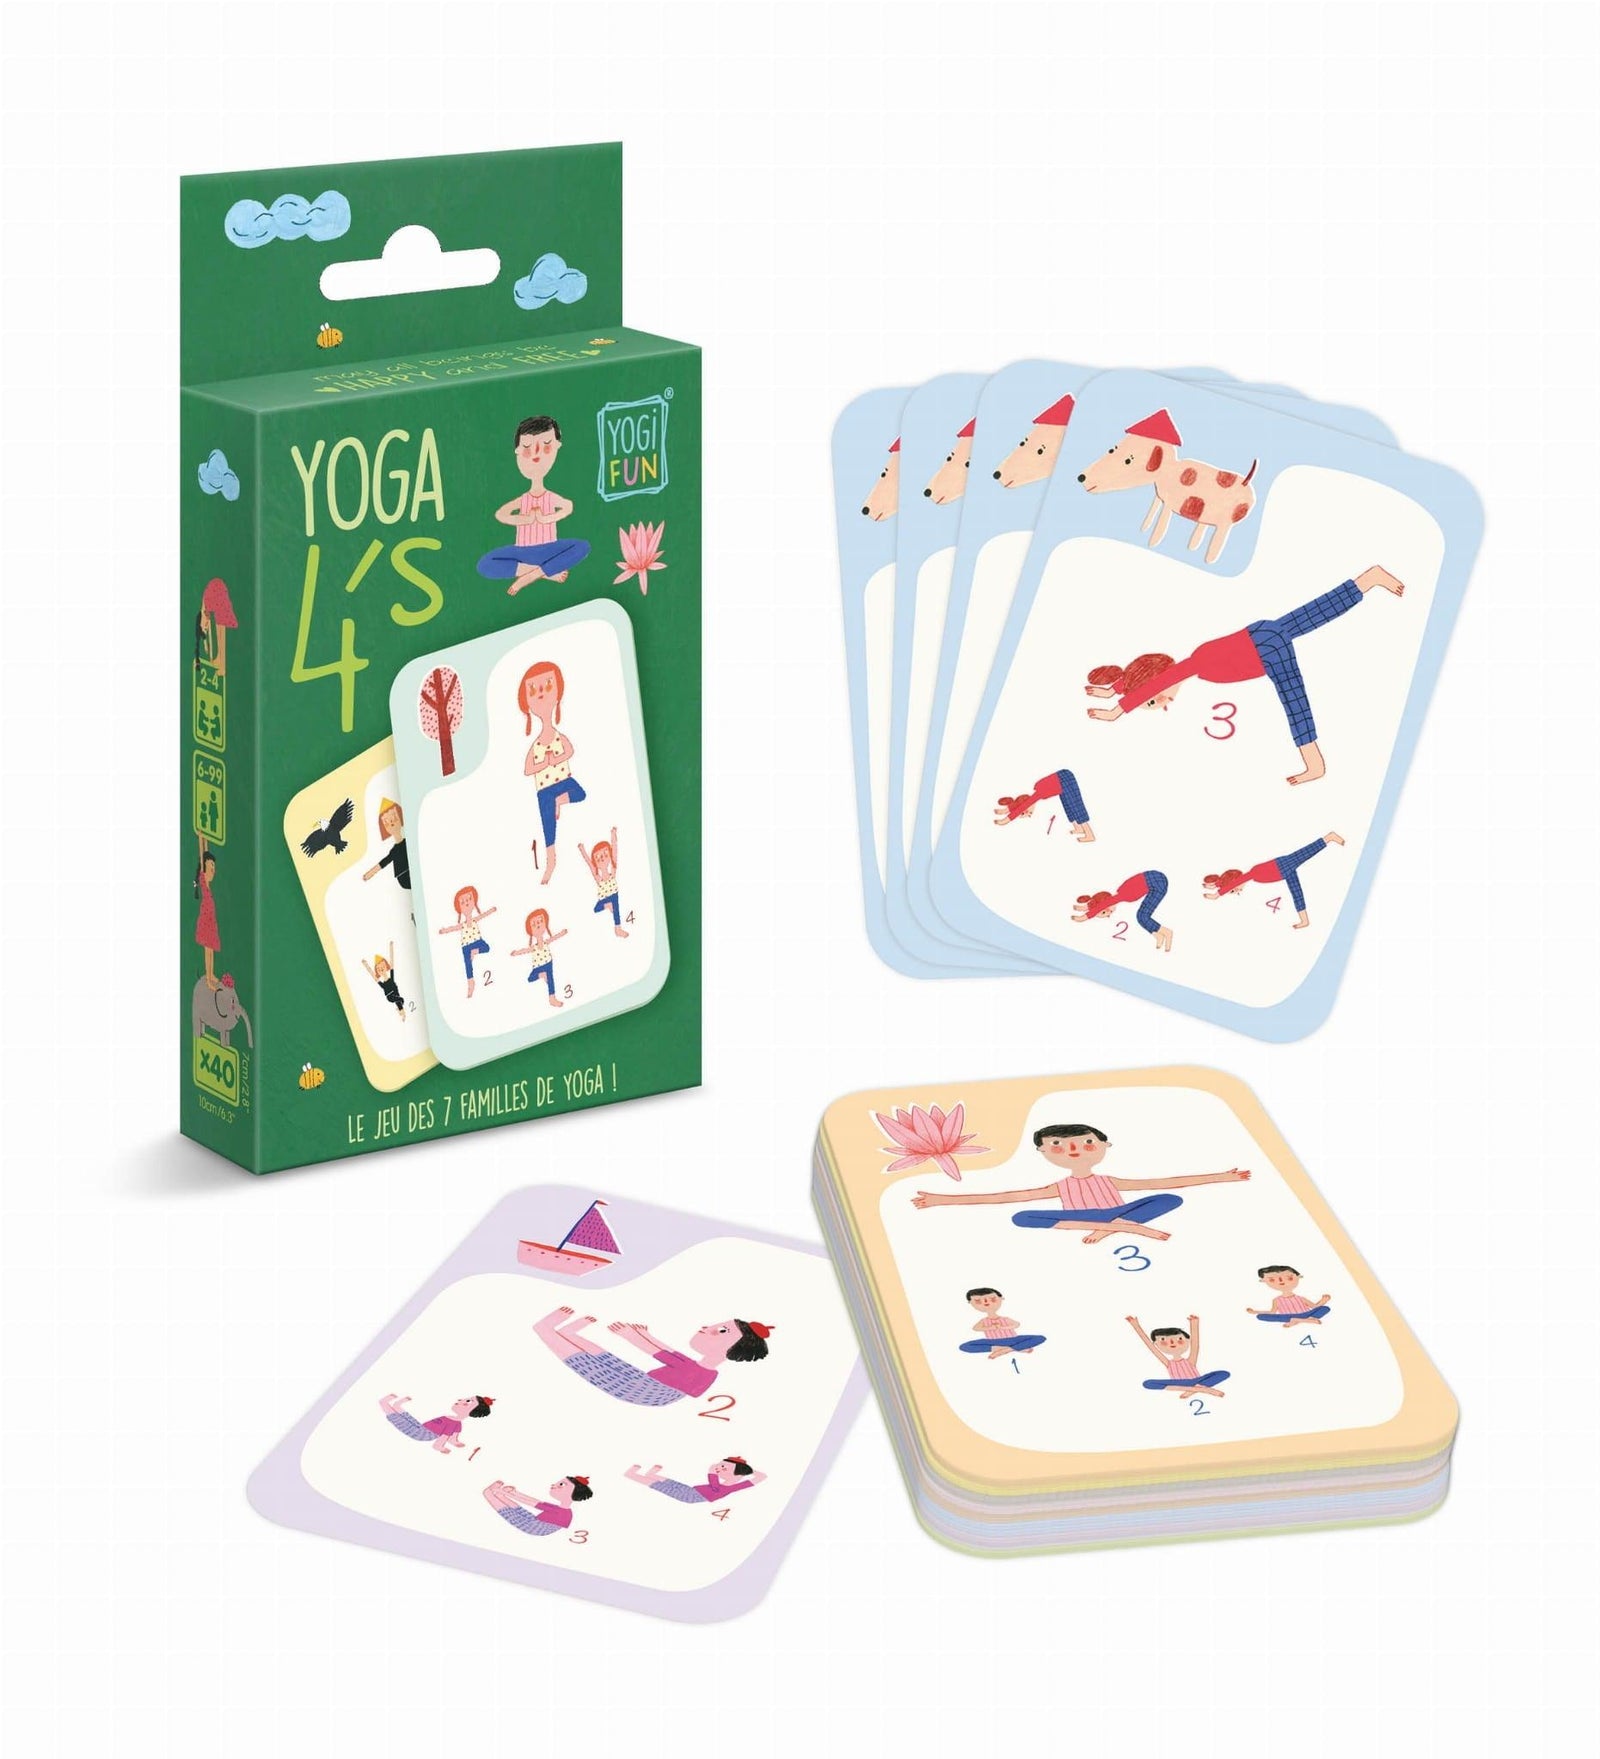 Buki: Yoga 4's card game